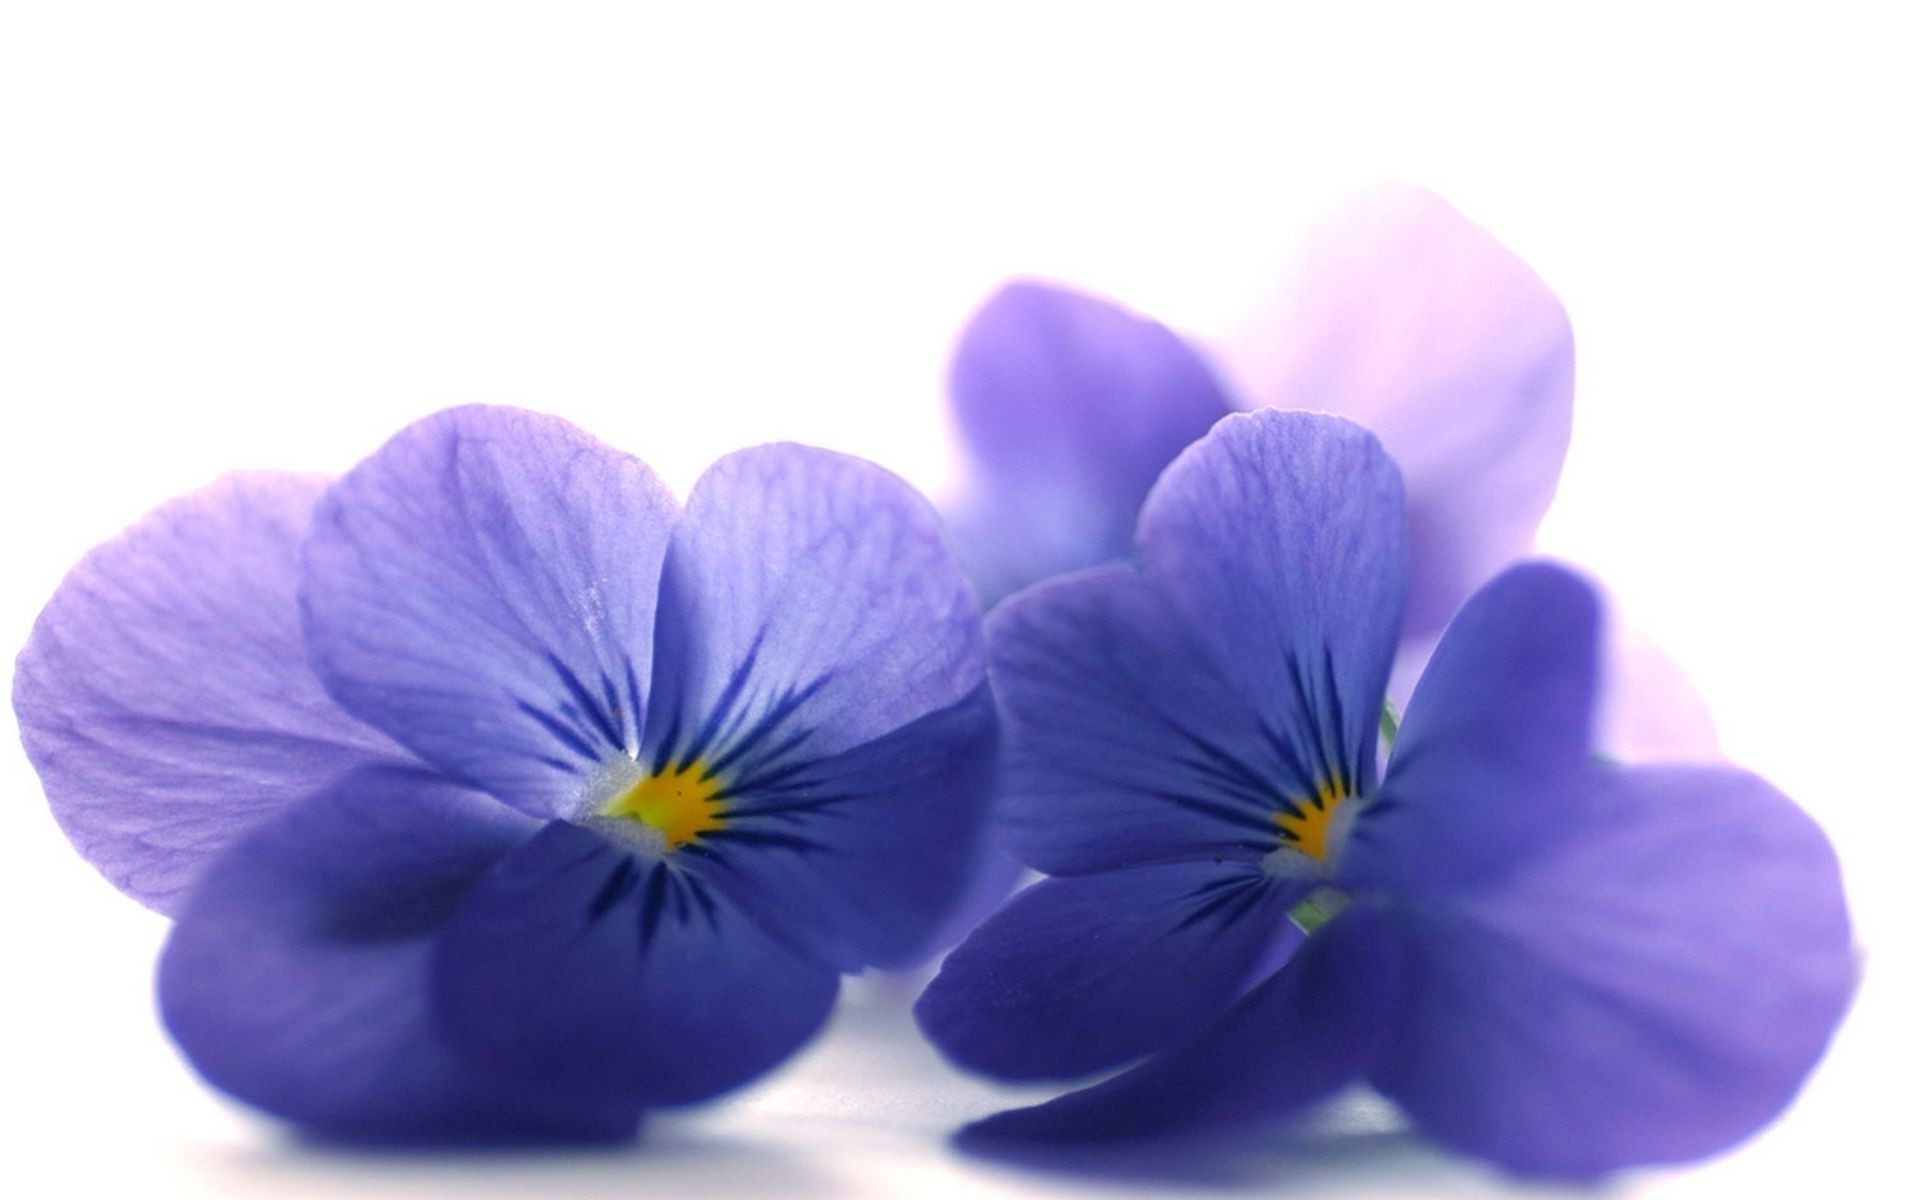 flowers flower nature petal flora blooming floral bright color delicate violet leaf